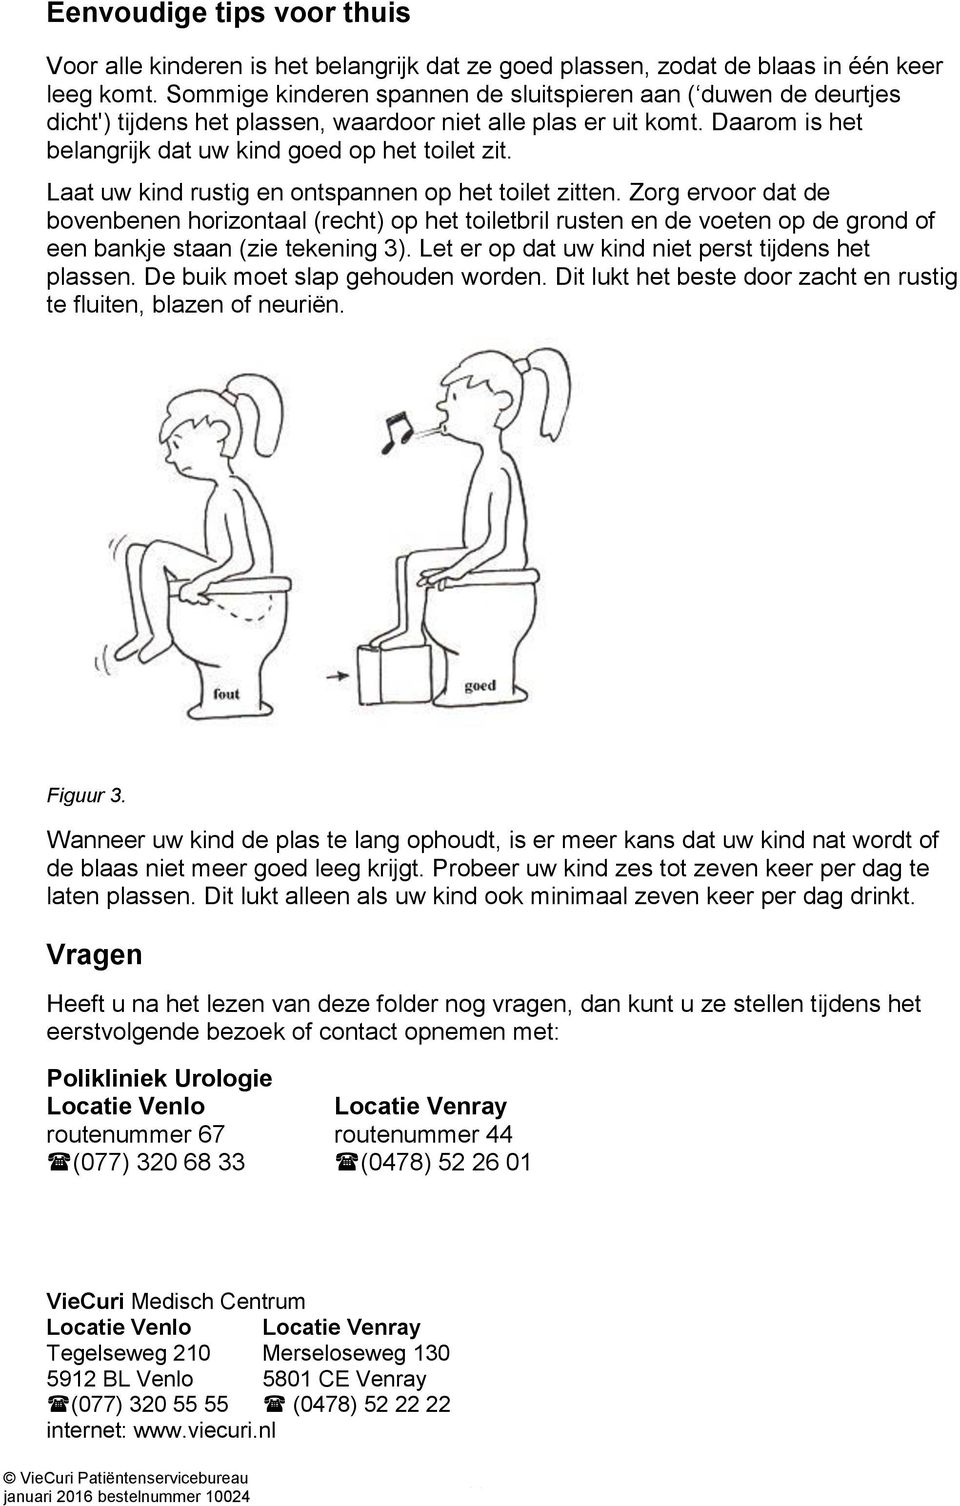 Laat uw kind rustig en ontspannen op het toilet zitten. Zorg ervoor dat de bovenbenen horizontaal (recht) op het toiletbril rusten en de voeten op de grond of een bankje staan (zie tekening 3).